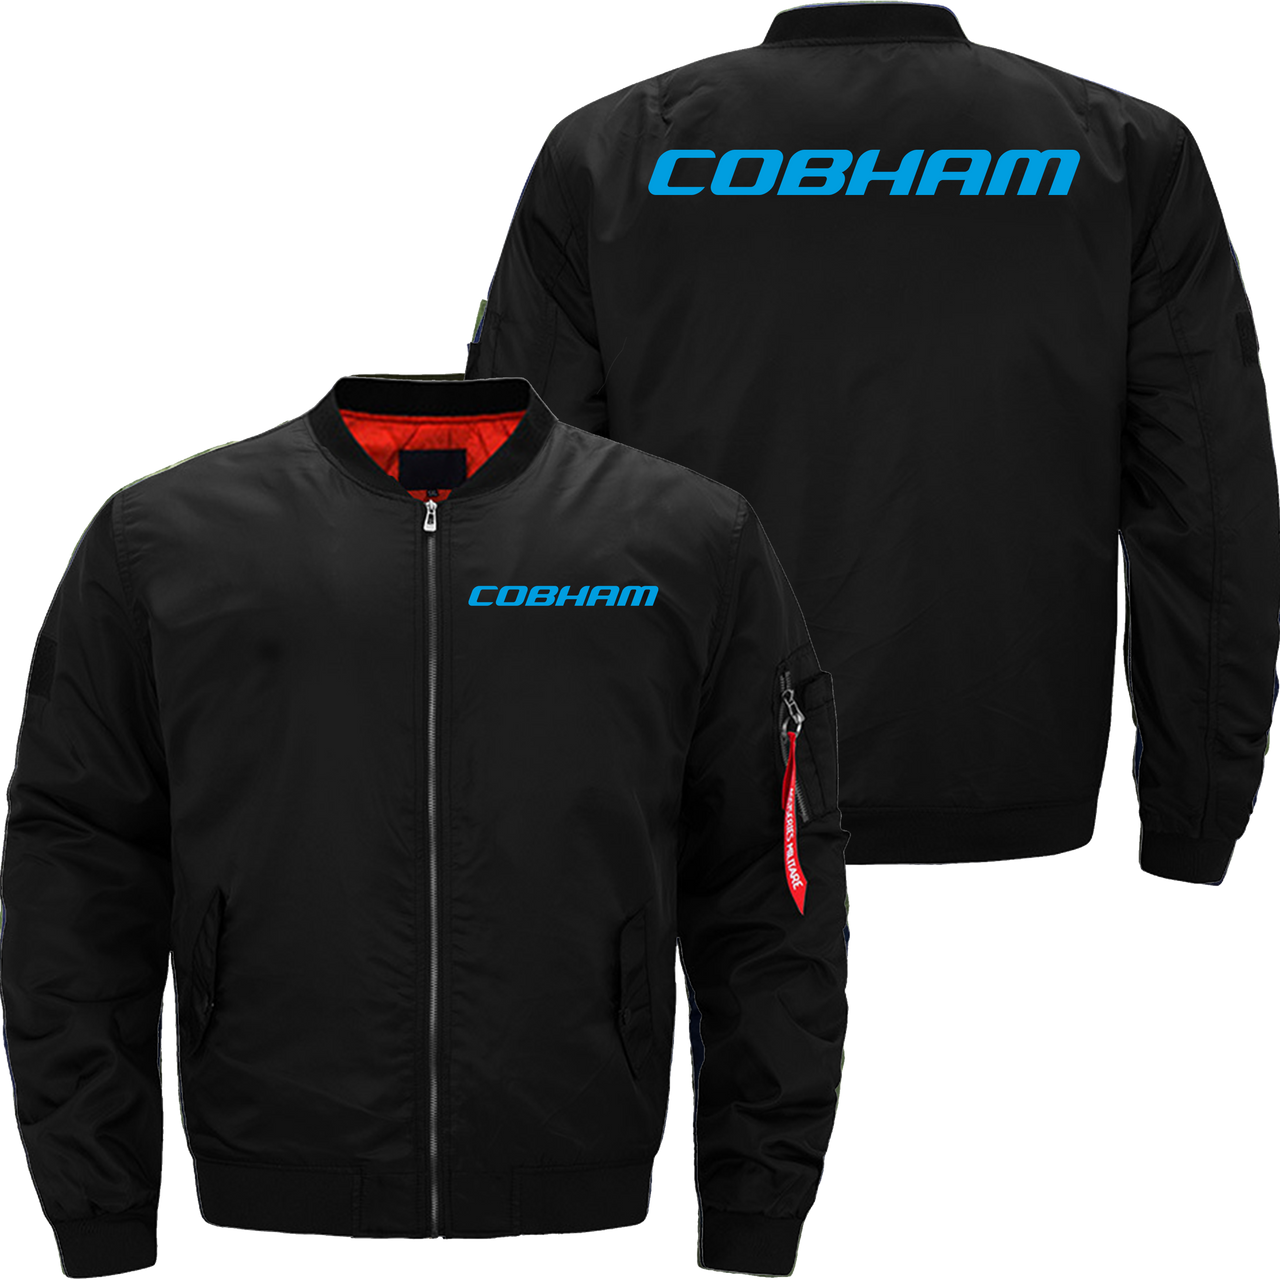 Cobham Jacket